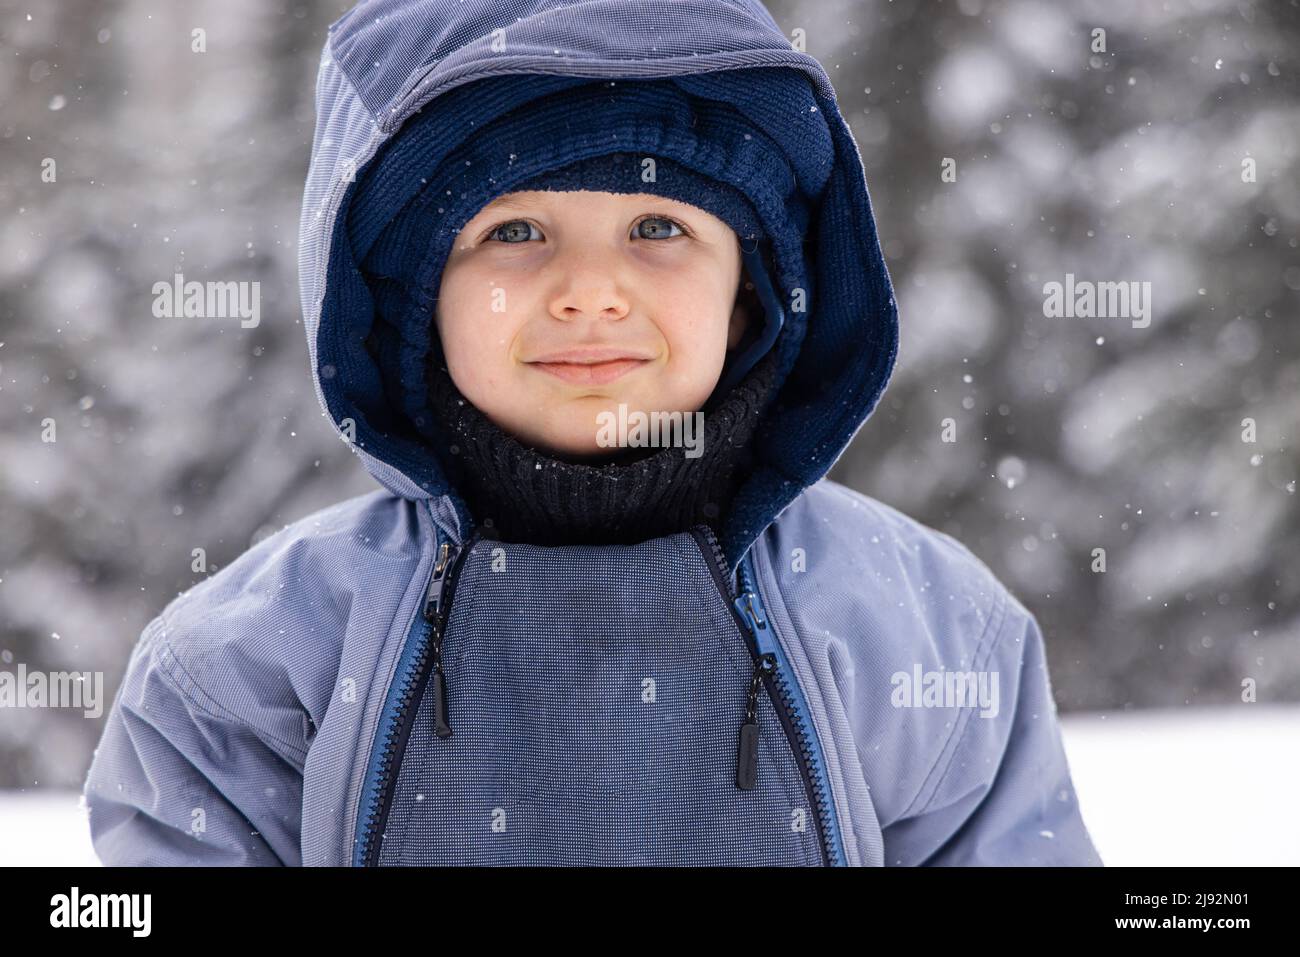 Nahaufnahme eines niedlichen, gesunden 2-jährigen Jungen, warm eingewickelt und im Winter auf dem Land stehend mit verschneiten Bäumen im Hintergrund. Stockfoto